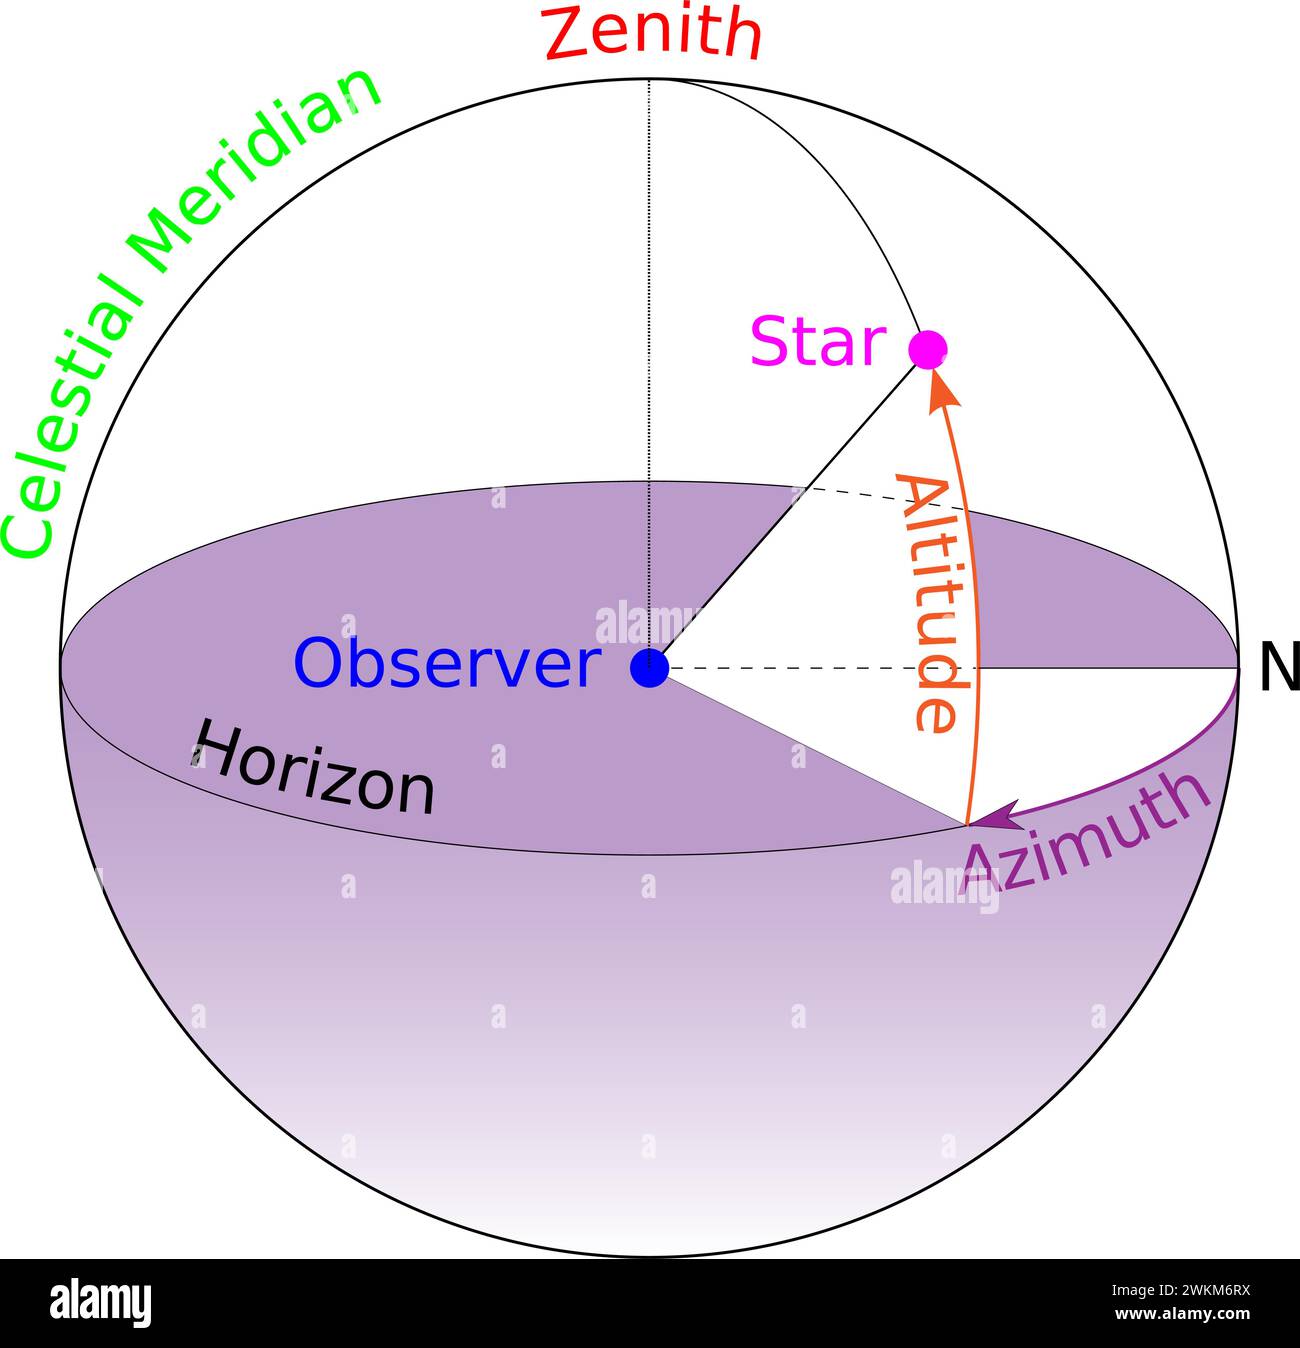 Un diagramme des termes azimut et altitude tels qu'ils se rapportent à la visualisation d'objets célestes.illustration vectorielle. Illustration de Vecteur